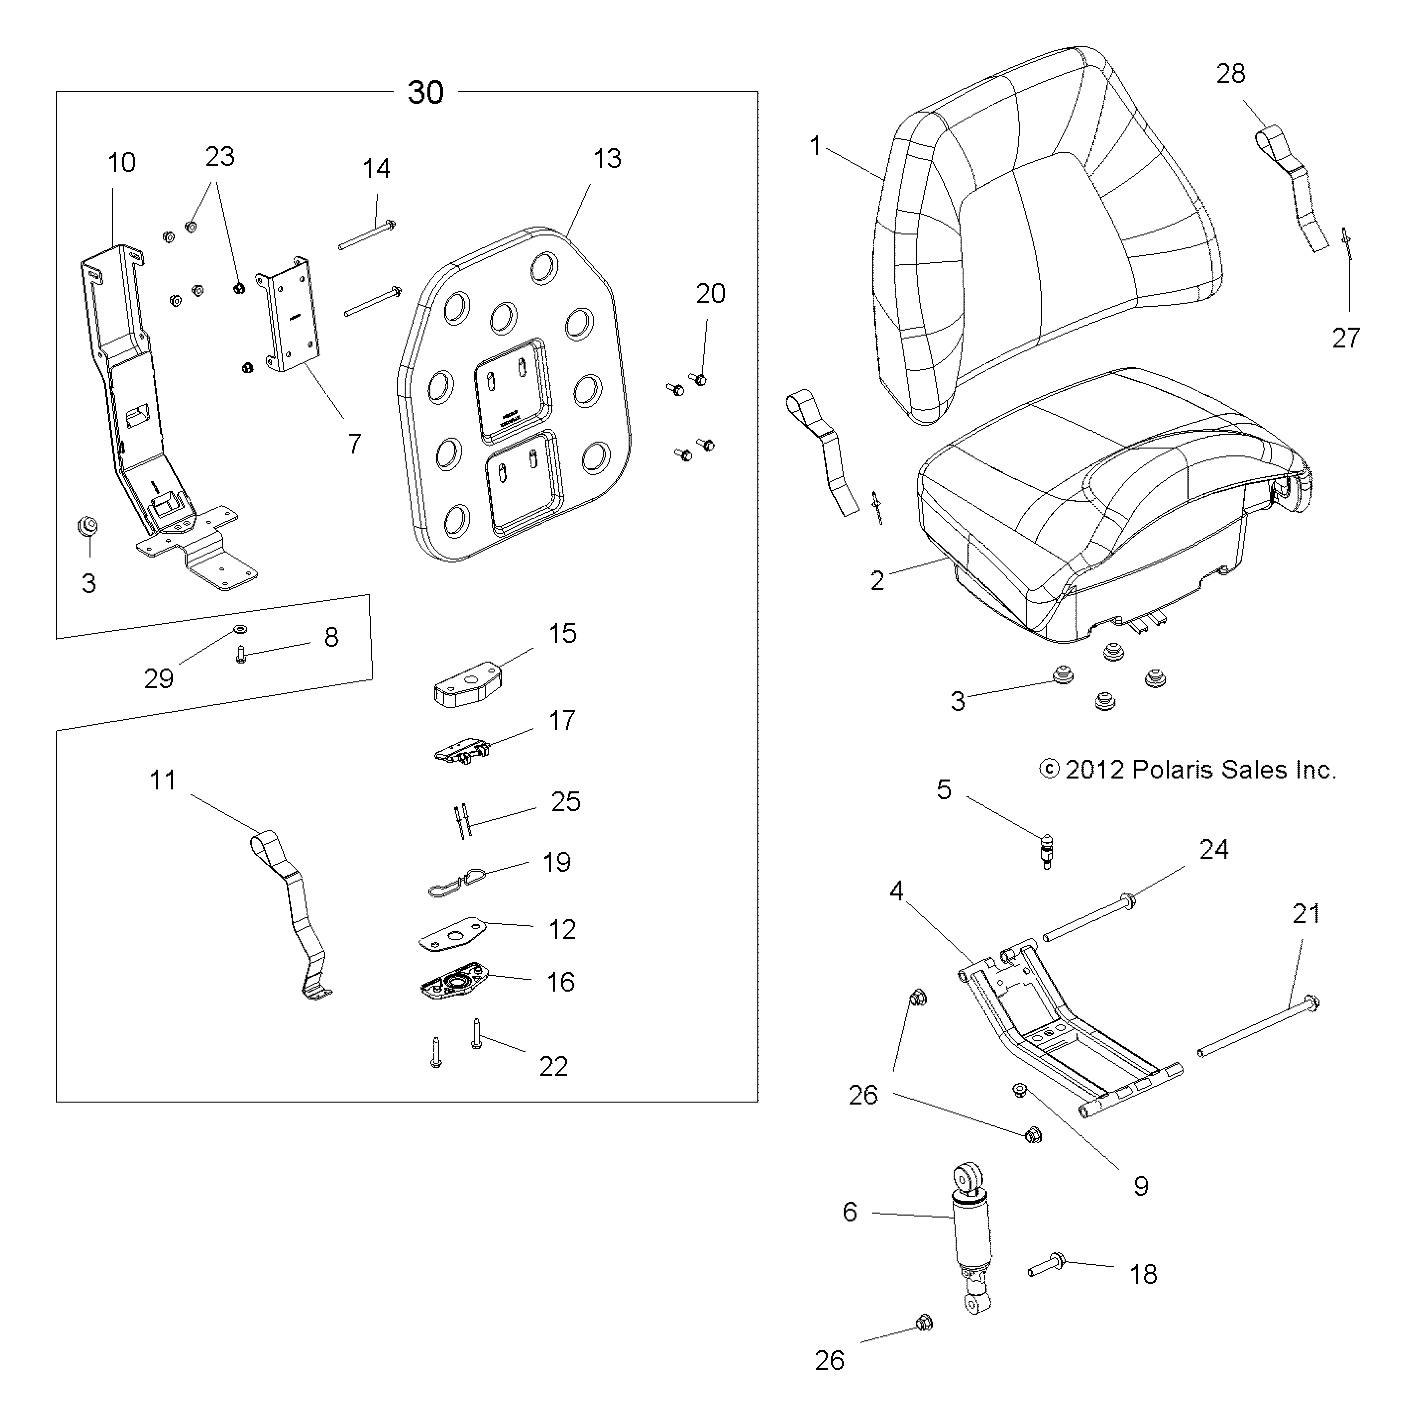 Foto diagrama Polaris que contem a peça 5437120